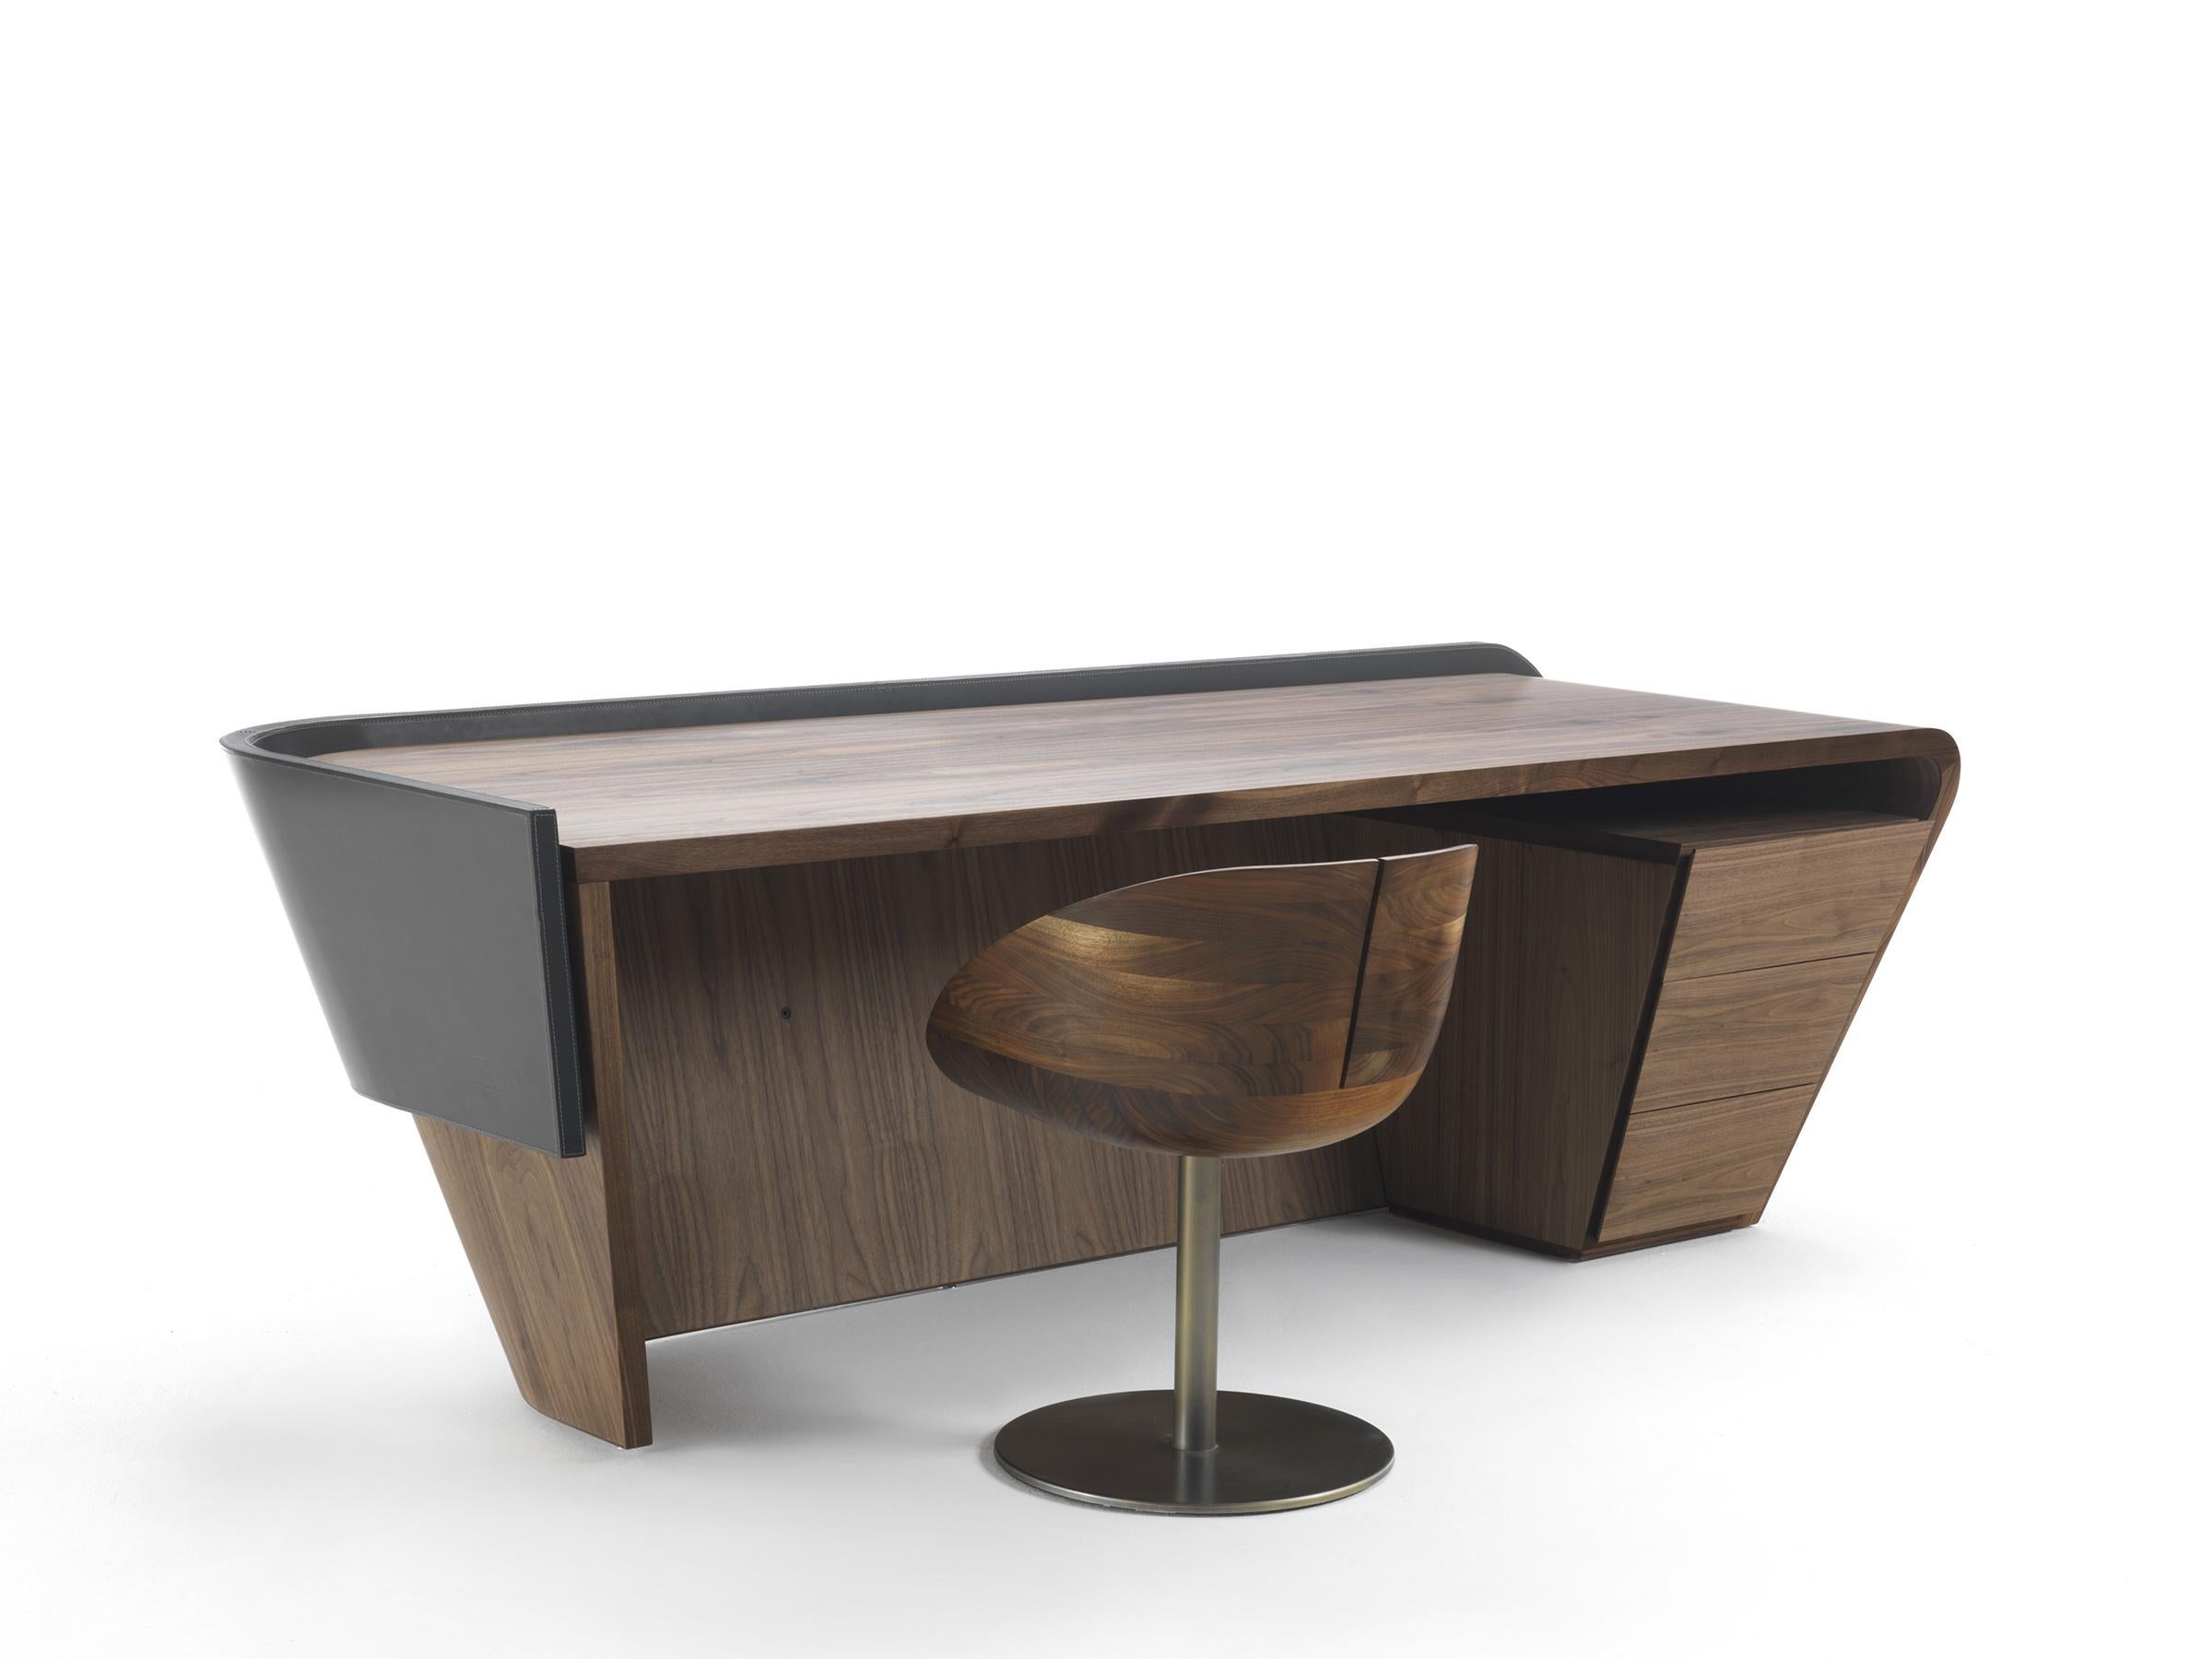 Schreibtisch aus furniertem Mehrschichtholz mit fließenden Linien, bestehend aus einer gebogenen Platte und einer Frontplatte, die entweder furniert oder mit Leder bezogen sein kann. Sie ist mit einer praktischen Kommode ausgestattet, die aus drei